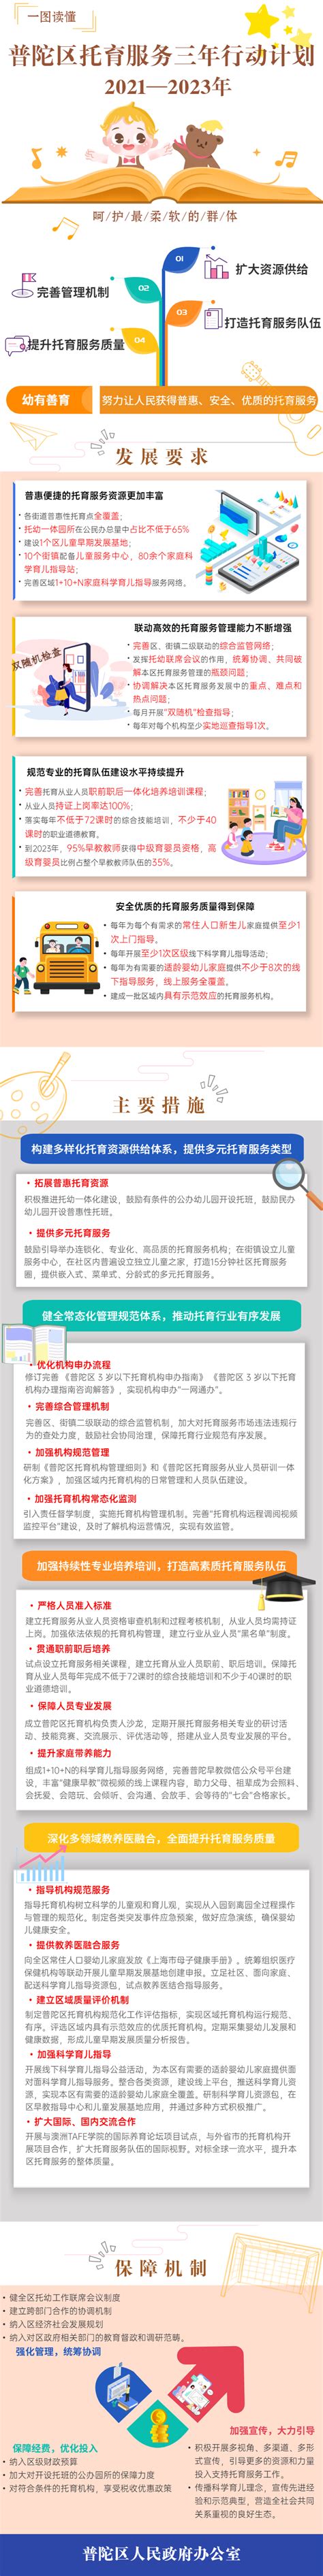 2022年上海普陀区教育系统公开招聘教师第6批拟录用名单公示